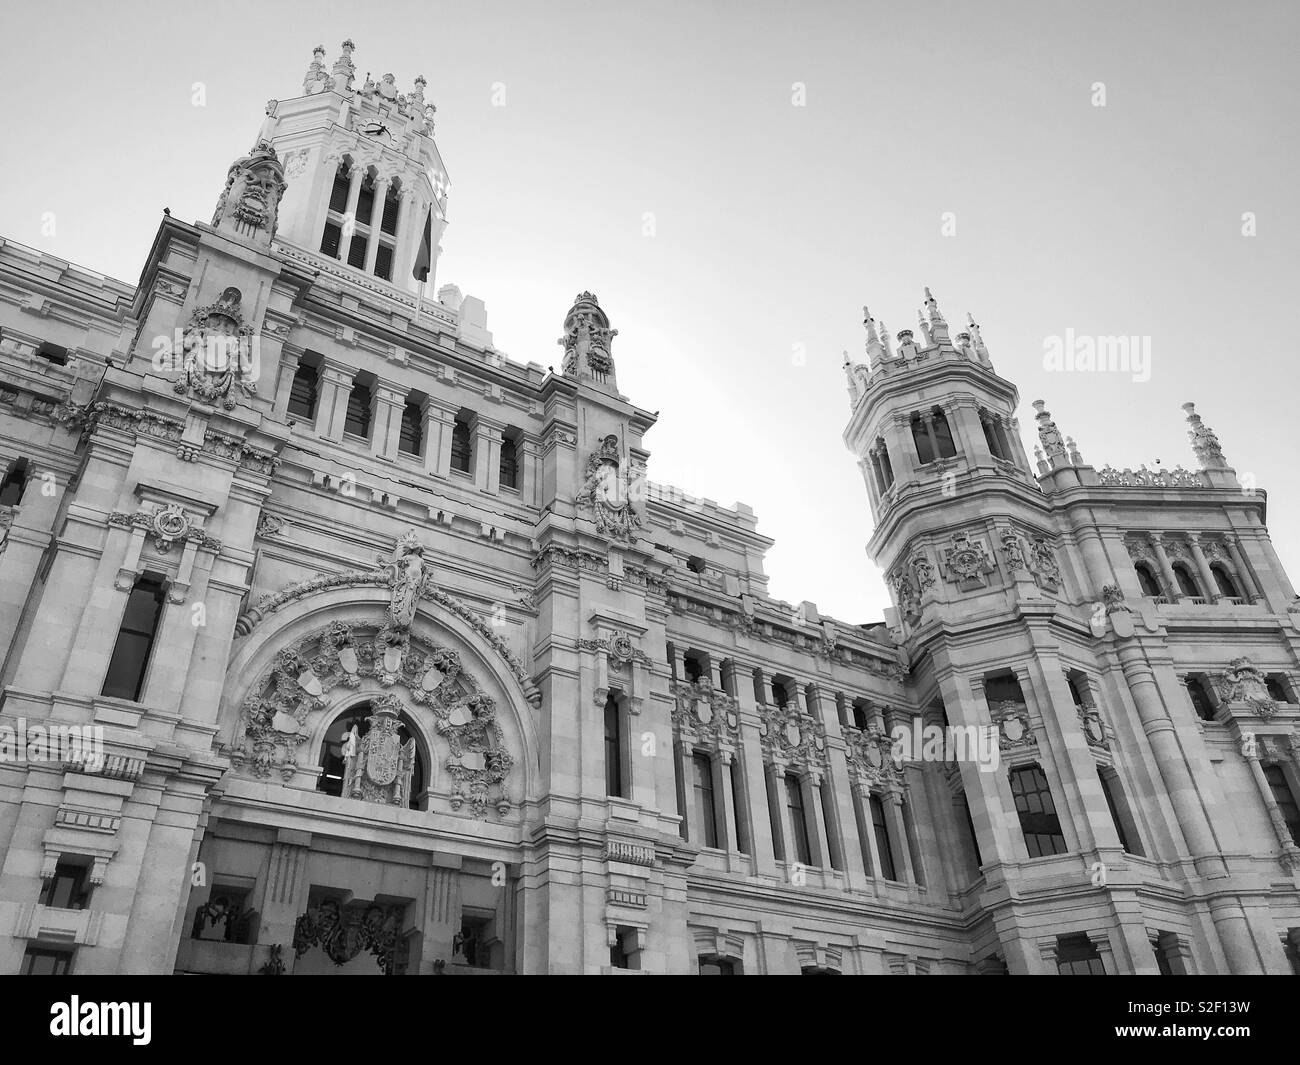 Una vista esterna dell'imponente Palacio de Cibeles o Palazzo della comunicazione nel centro di Madrid, Spagna. Questo edificio ospita il Consiglio Comunale e il Sindaco di Office. Foto © COLIN HOSKINS. Foto Stock